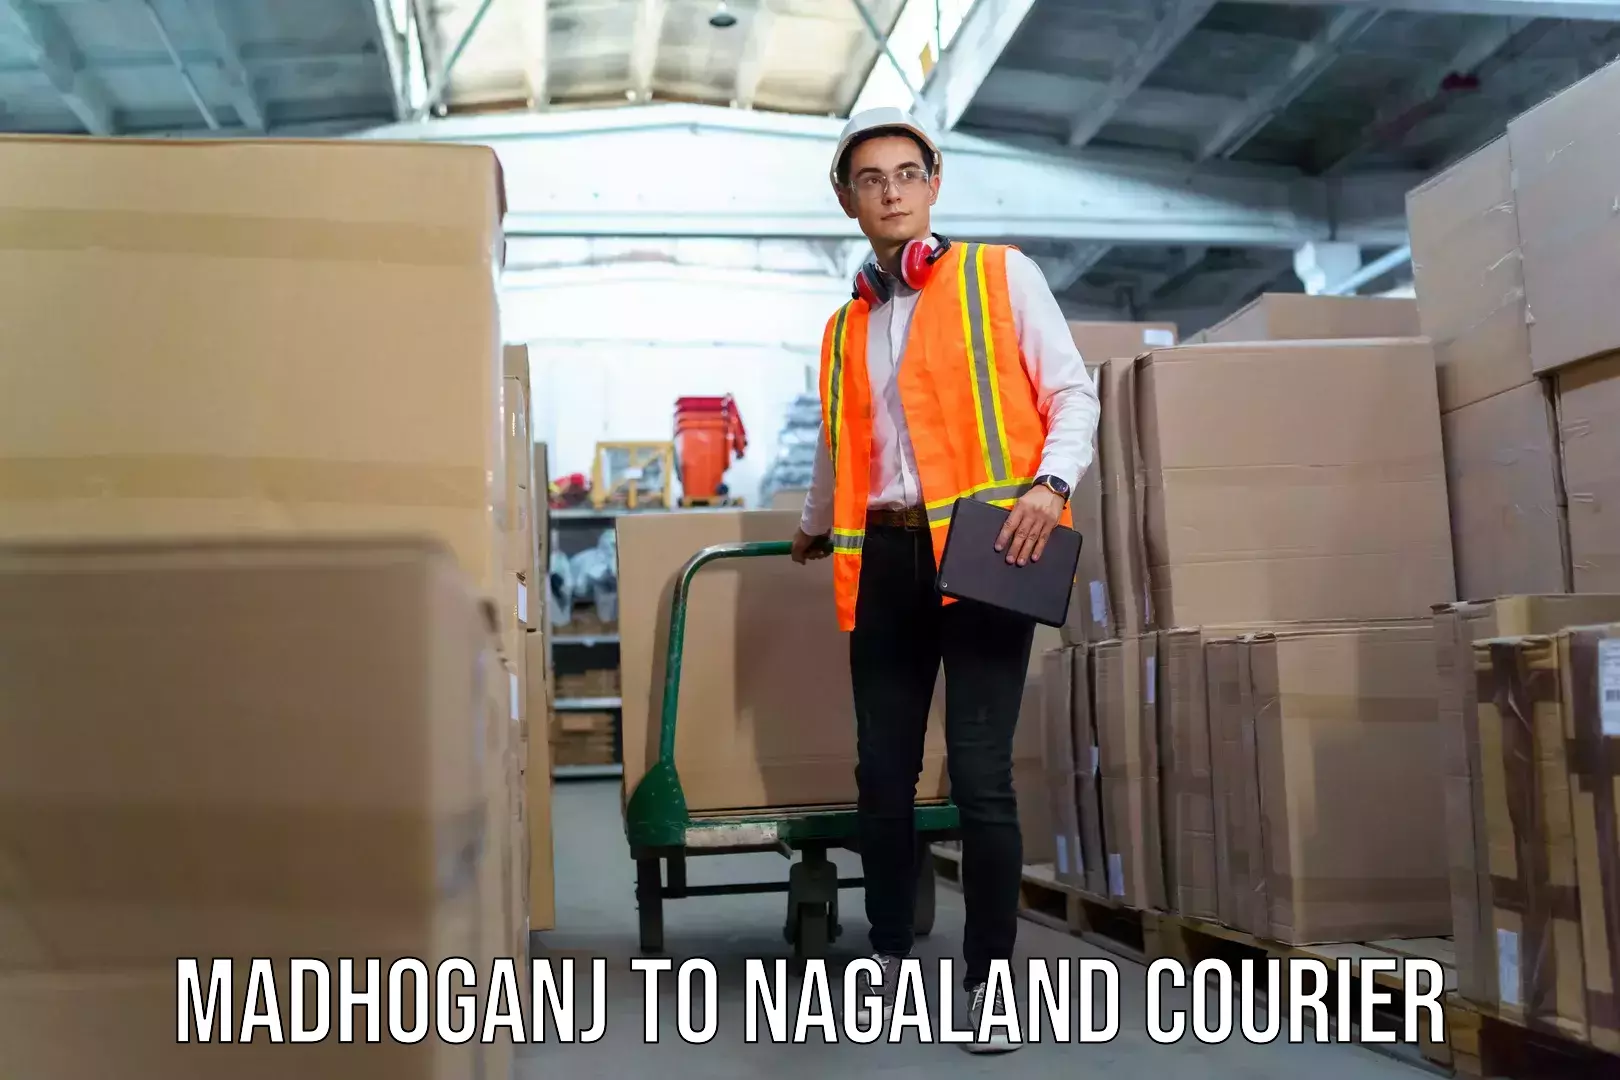 Baggage shipping service Madhoganj to Nagaland